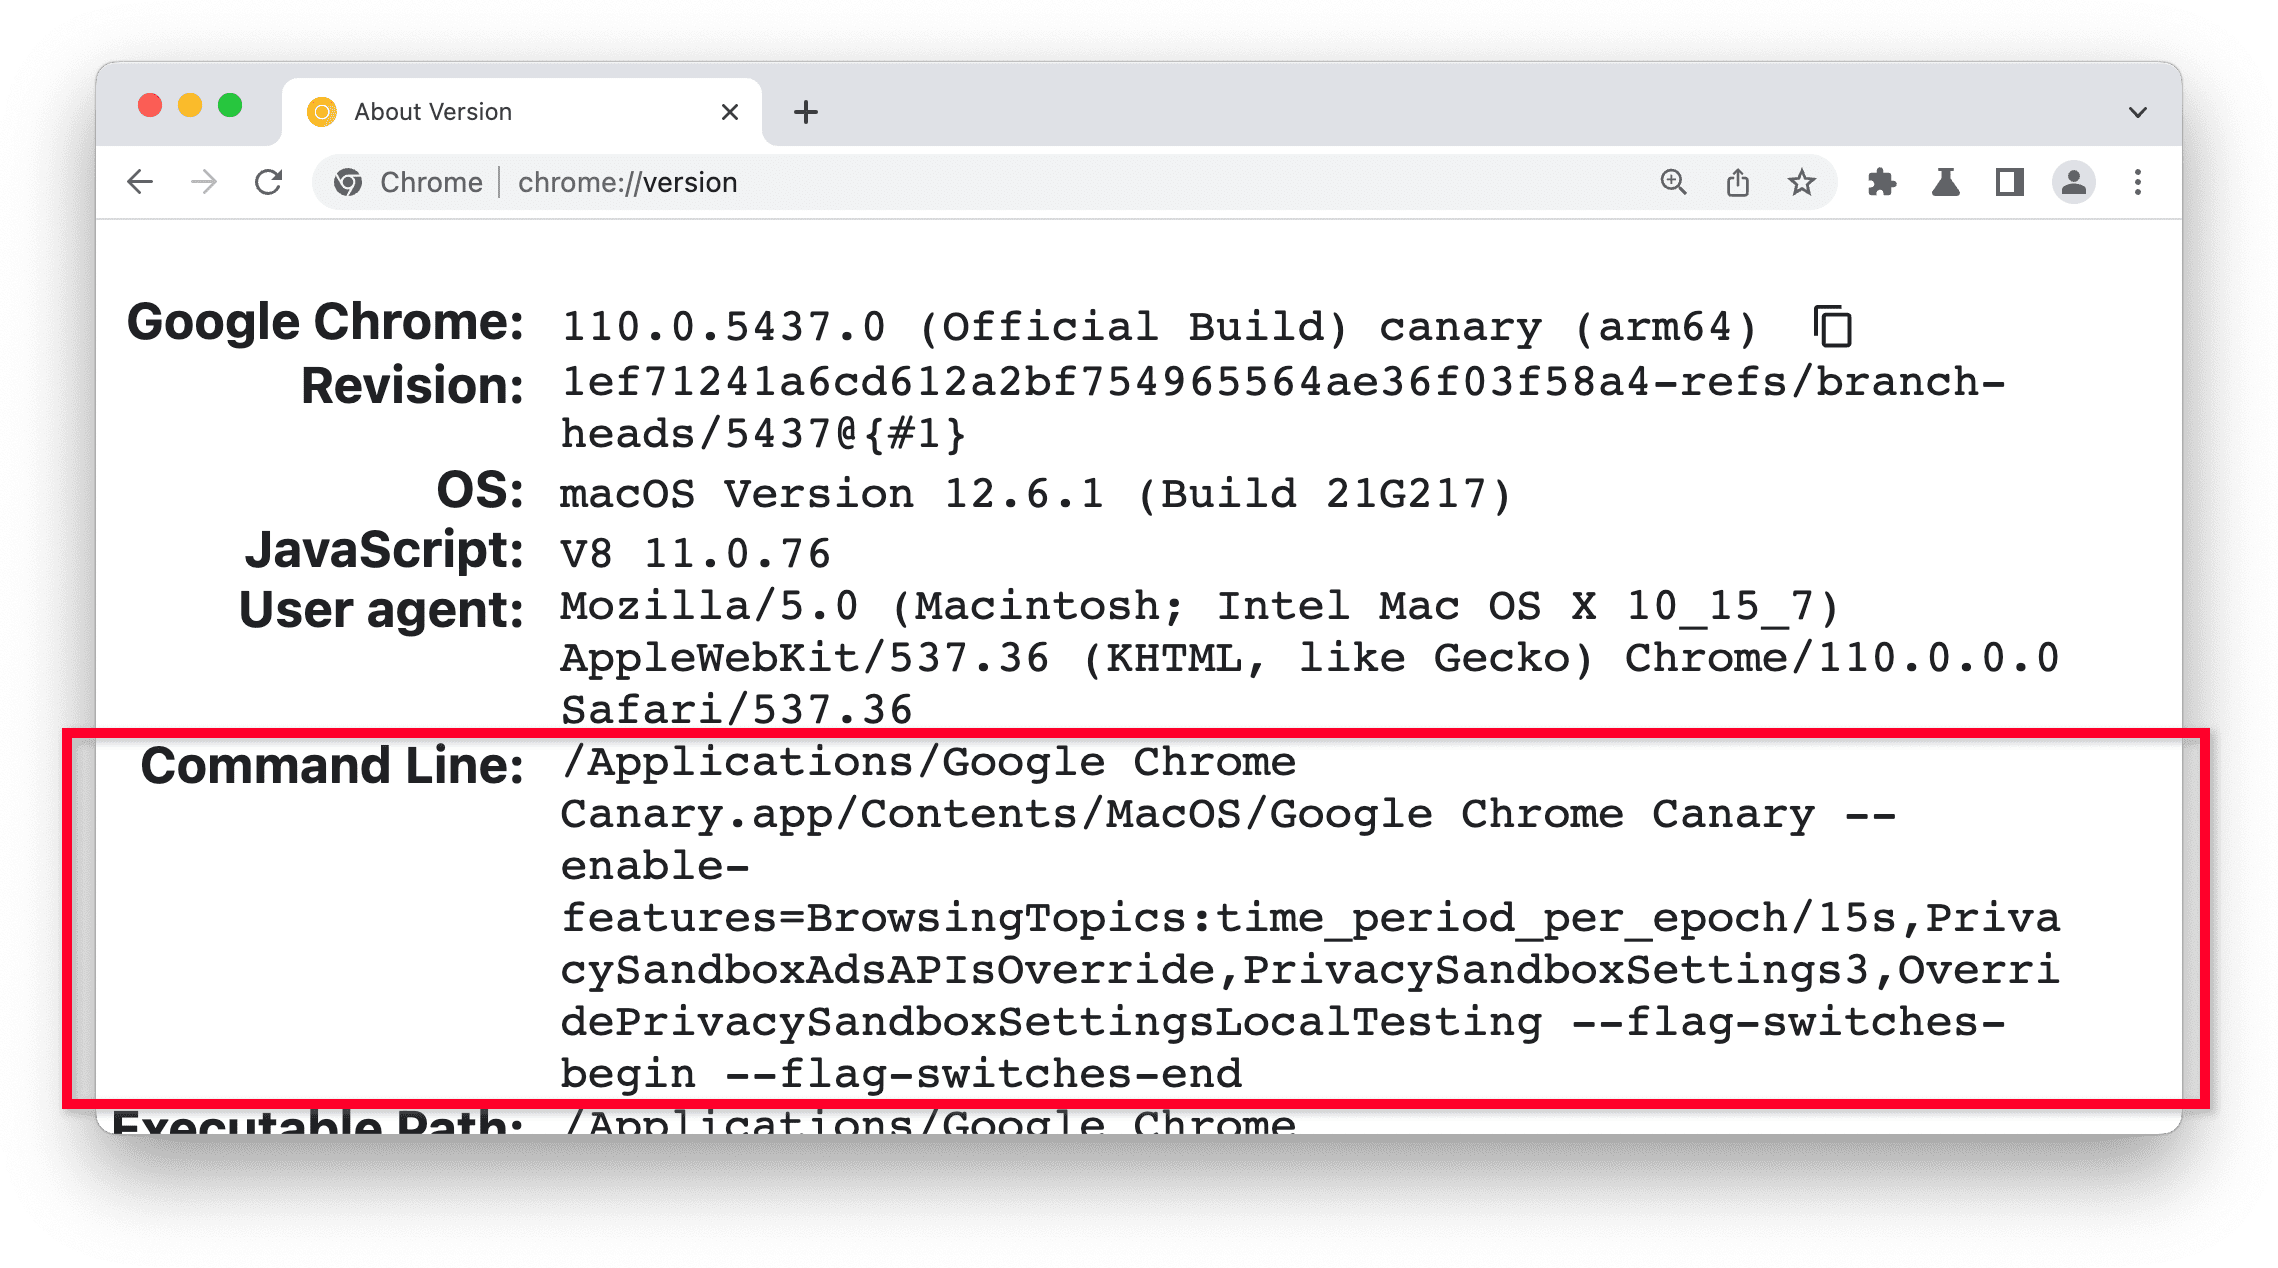 صفحه chrome://version در Chrome Canary، بخش خط فرمان برجسته شده است.